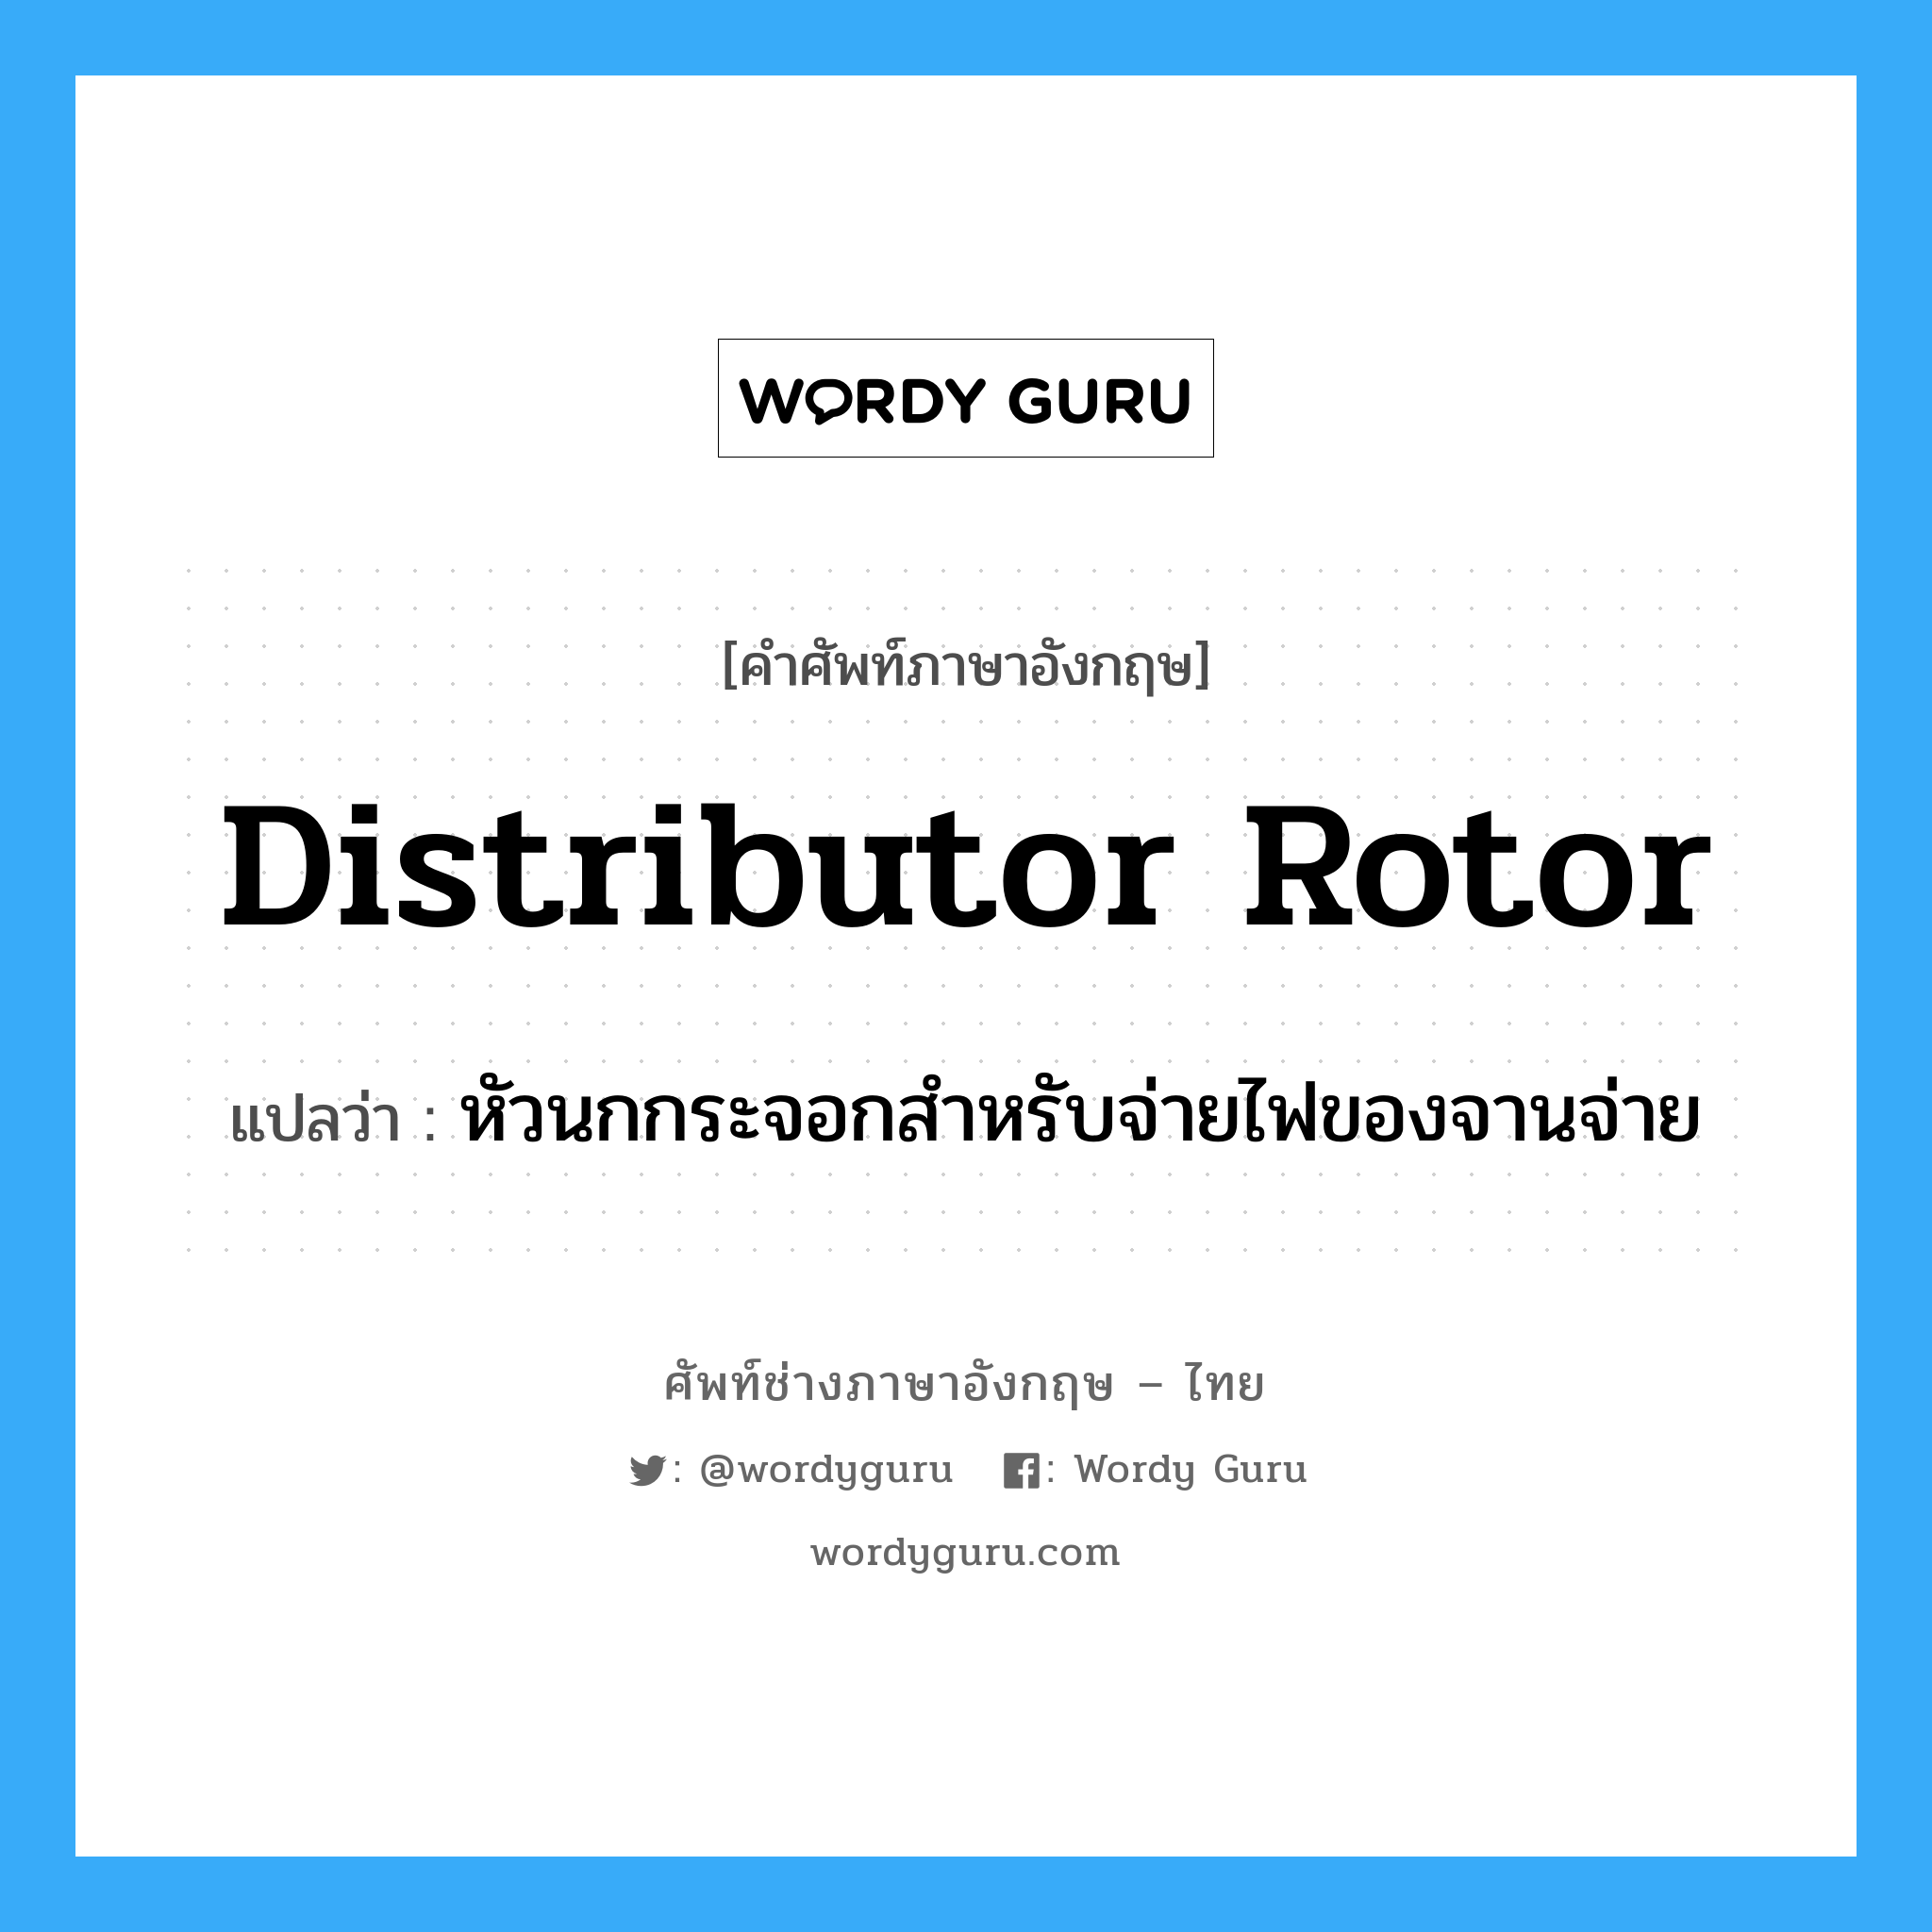 distributor rotor แปลว่า?, คำศัพท์ช่างภาษาอังกฤษ - ไทย distributor rotor คำศัพท์ภาษาอังกฤษ distributor rotor แปลว่า หัวนกกระจอกสำหรับจ่ายไฟของจานจ่าย